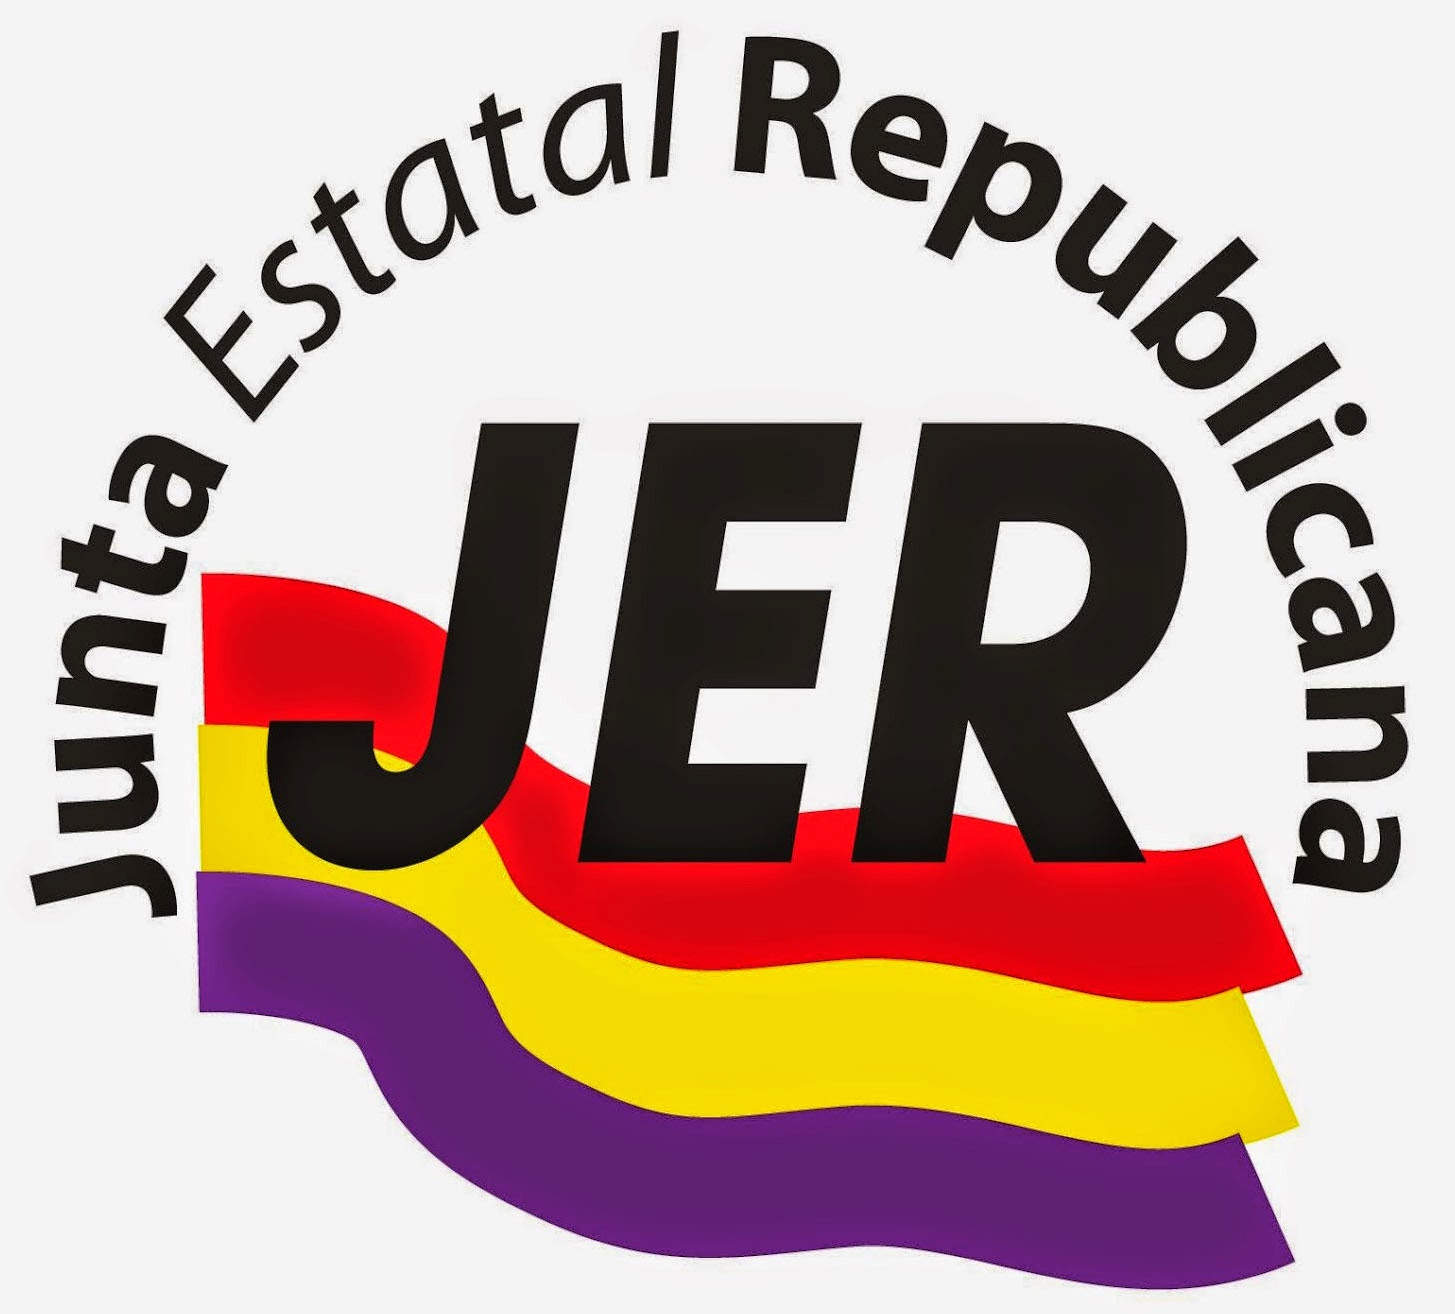 Junta Estatal Republicana - JER